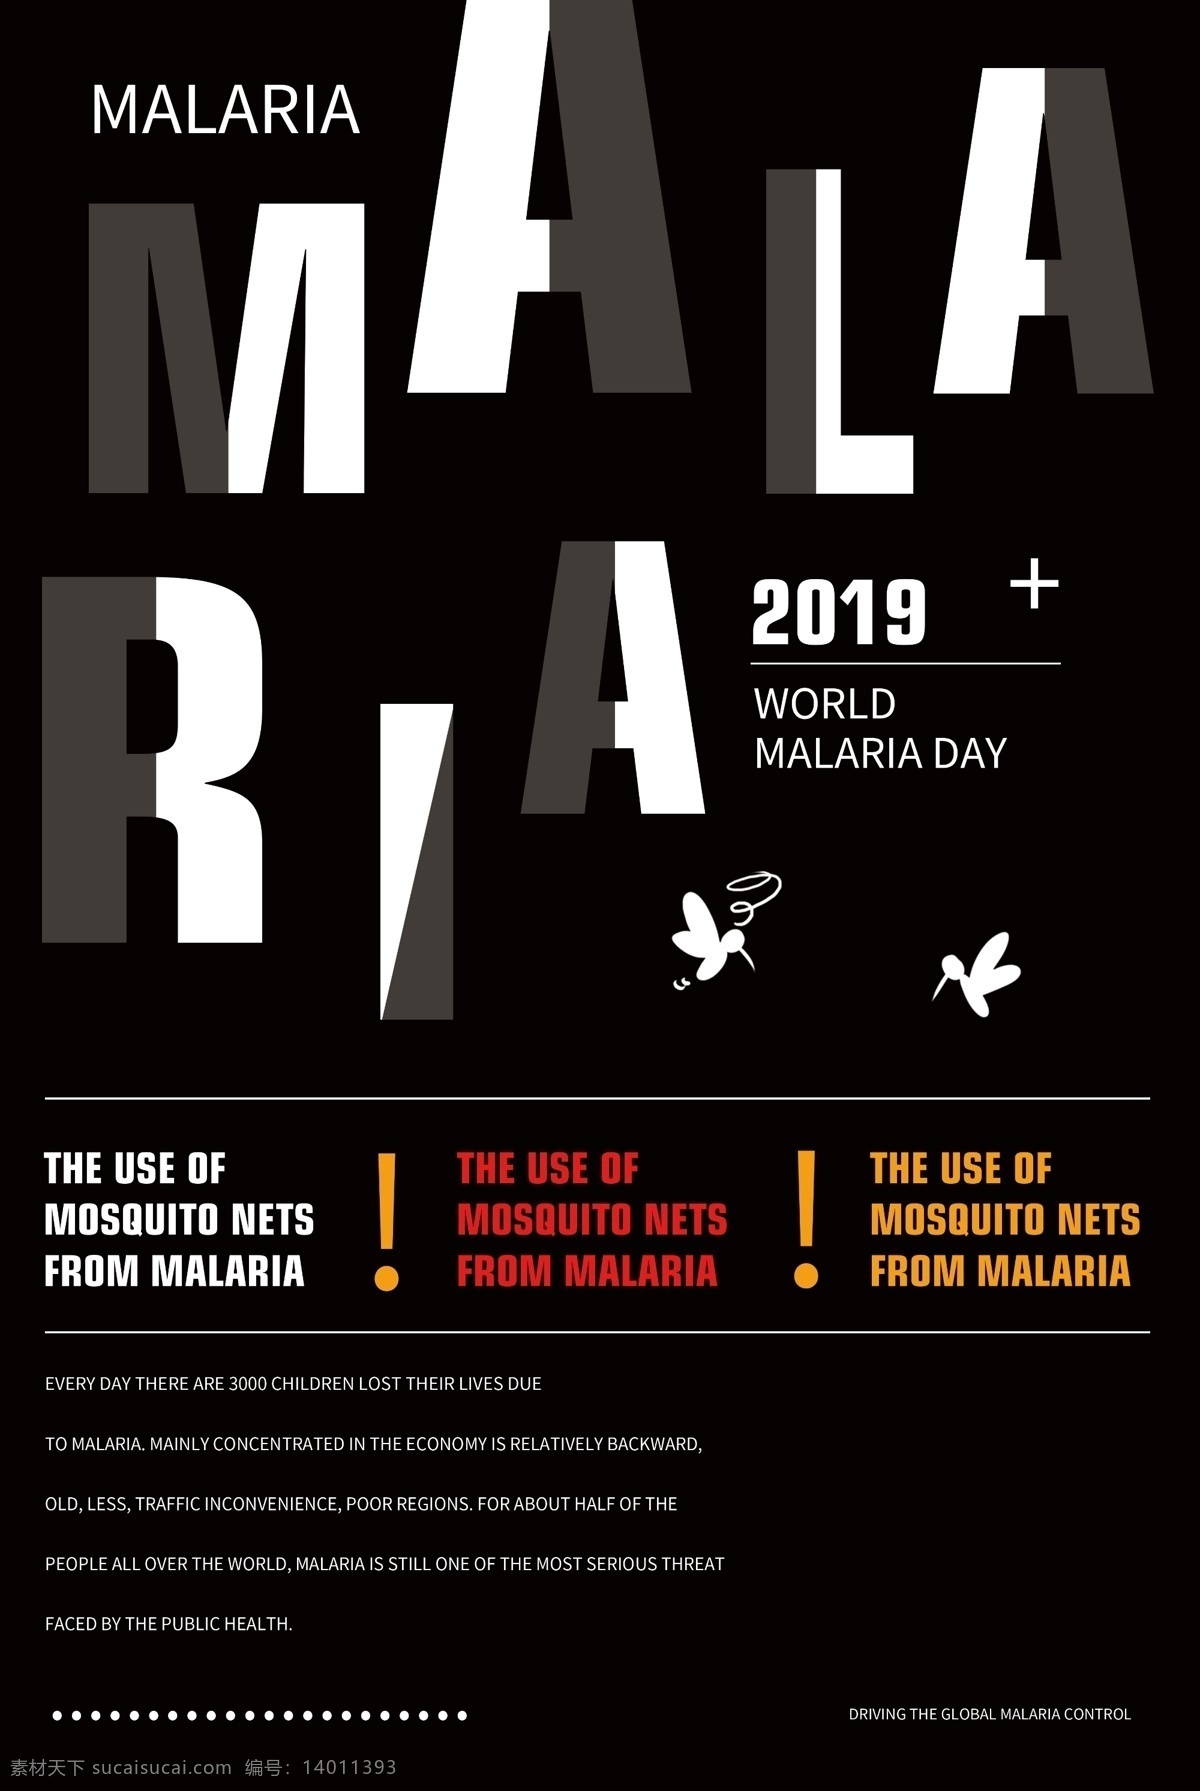 世界 防治 疟疾 病 日 英文 海报 疾病 文字 传染病 纯英文海报 英文海报 简约 宣传